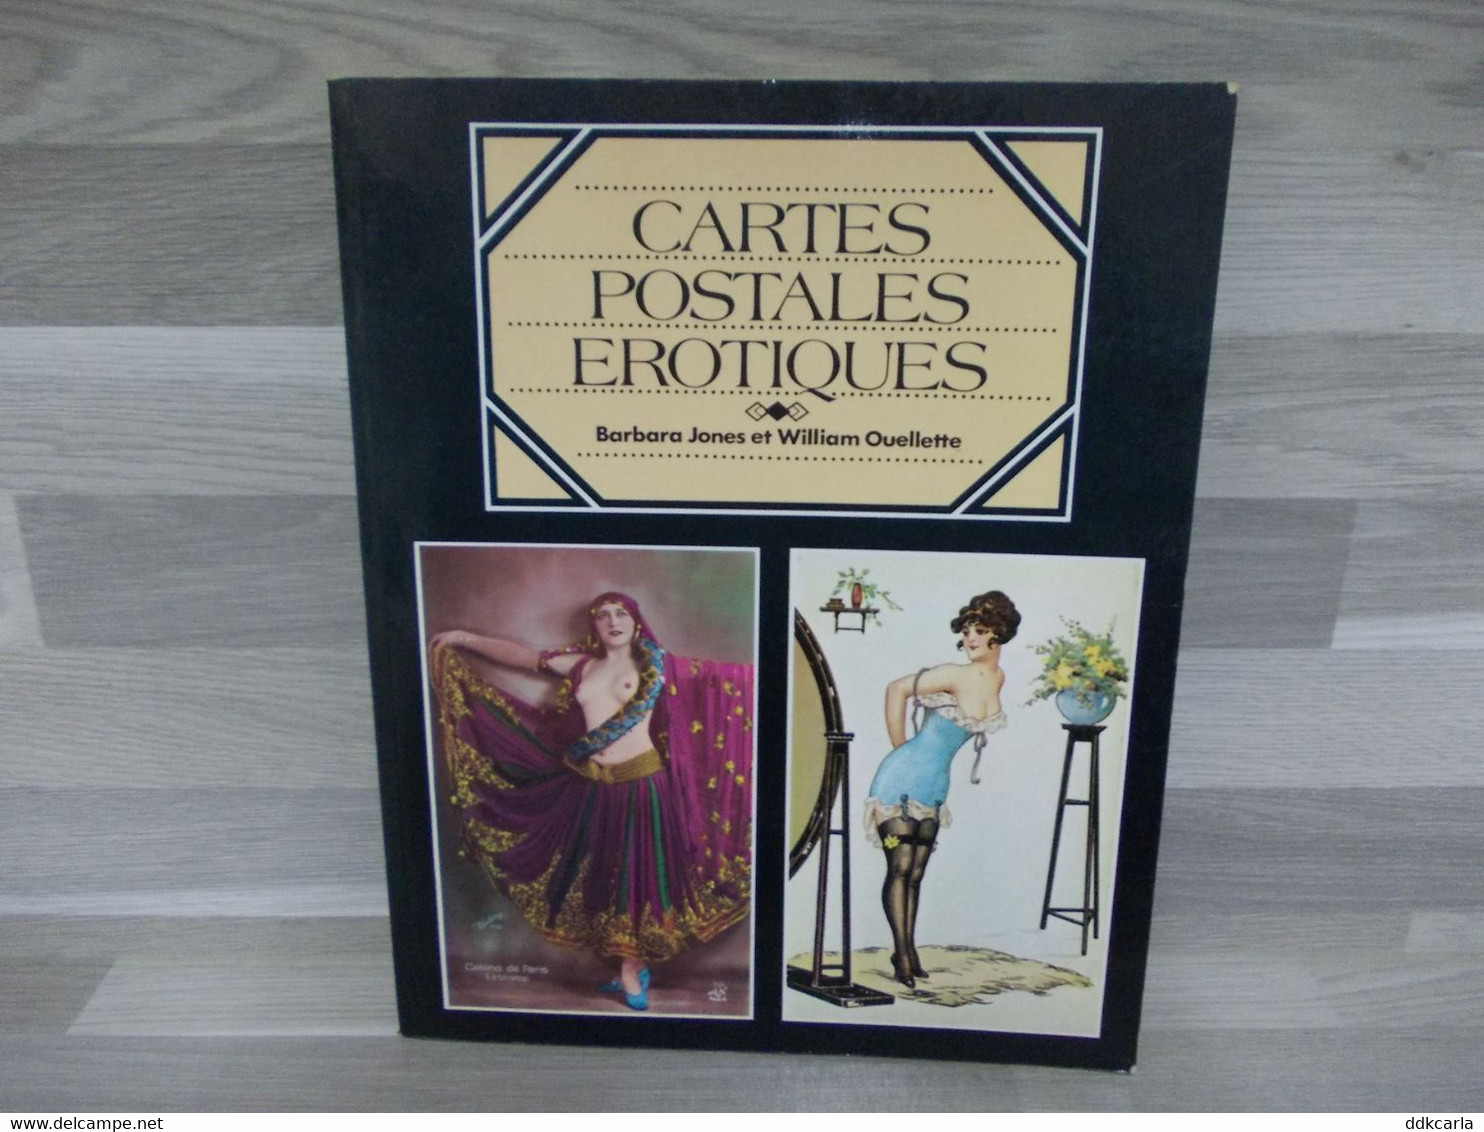 Cartes Postales Erotiques - Barbara Jones Et William Ouellette - Livres & Catalogues